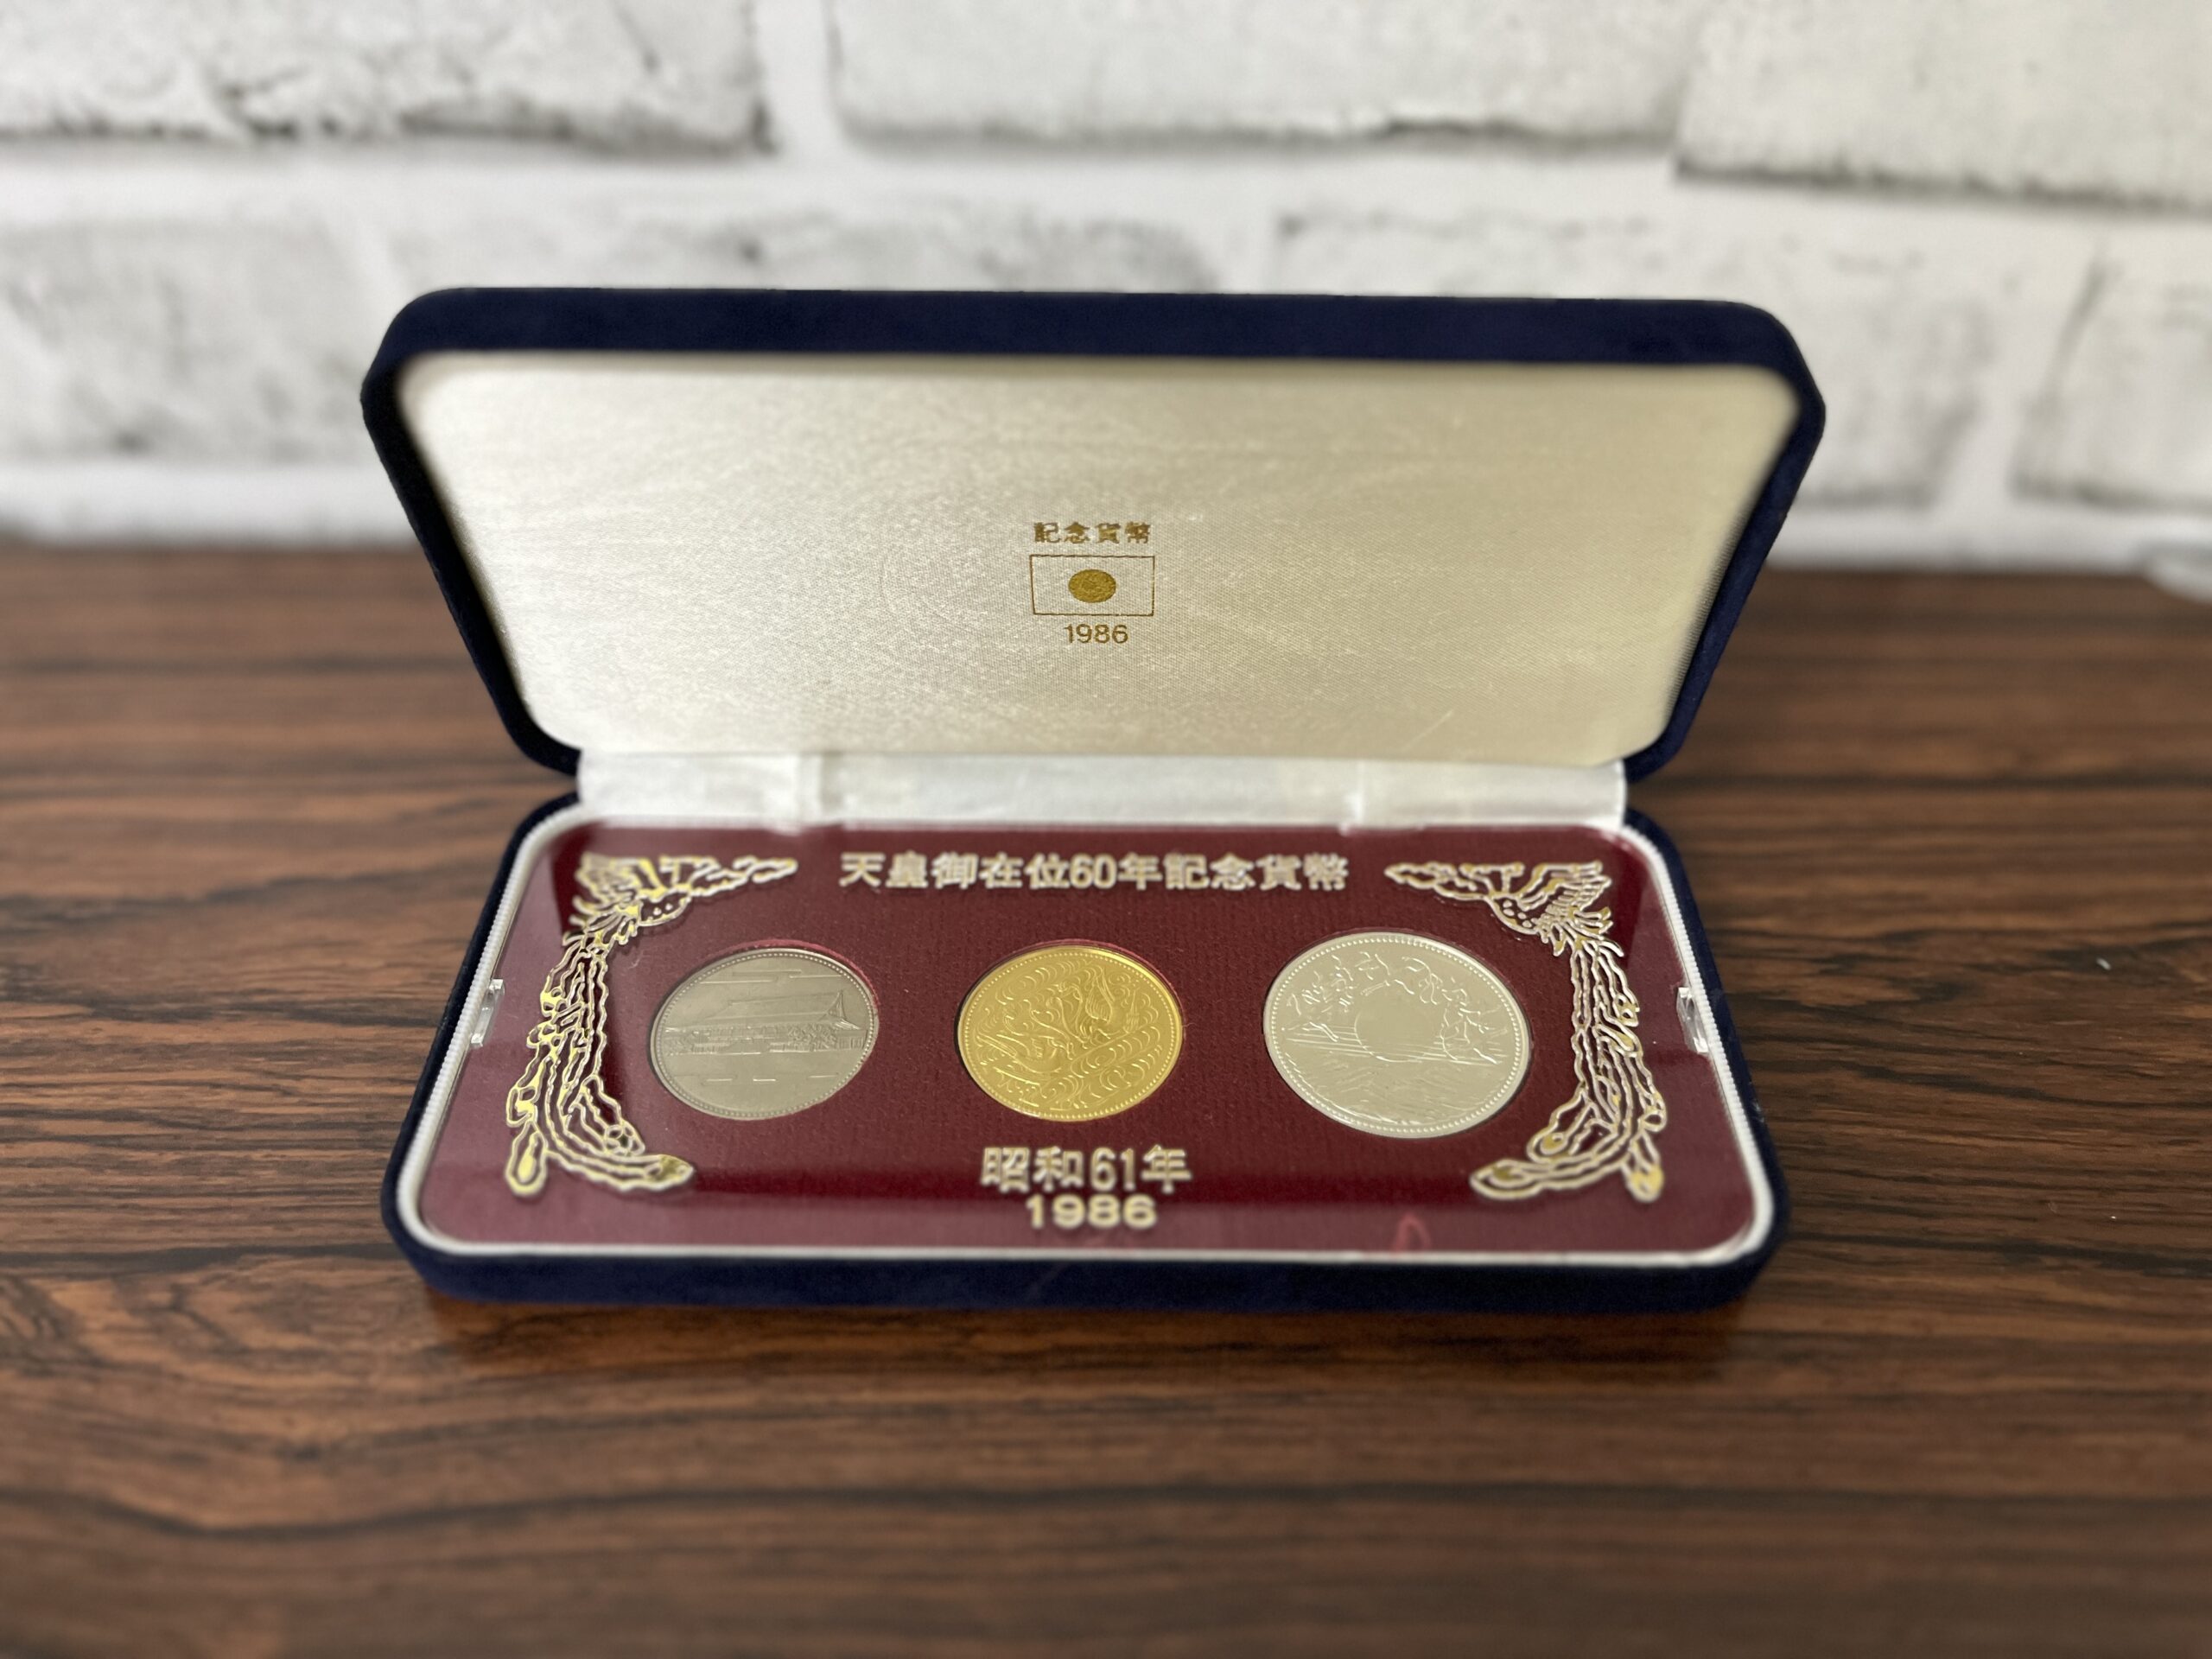 天皇陛下御在位60年記念硬貨セット - 旧貨幣/金貨/銀貨/記念硬貨